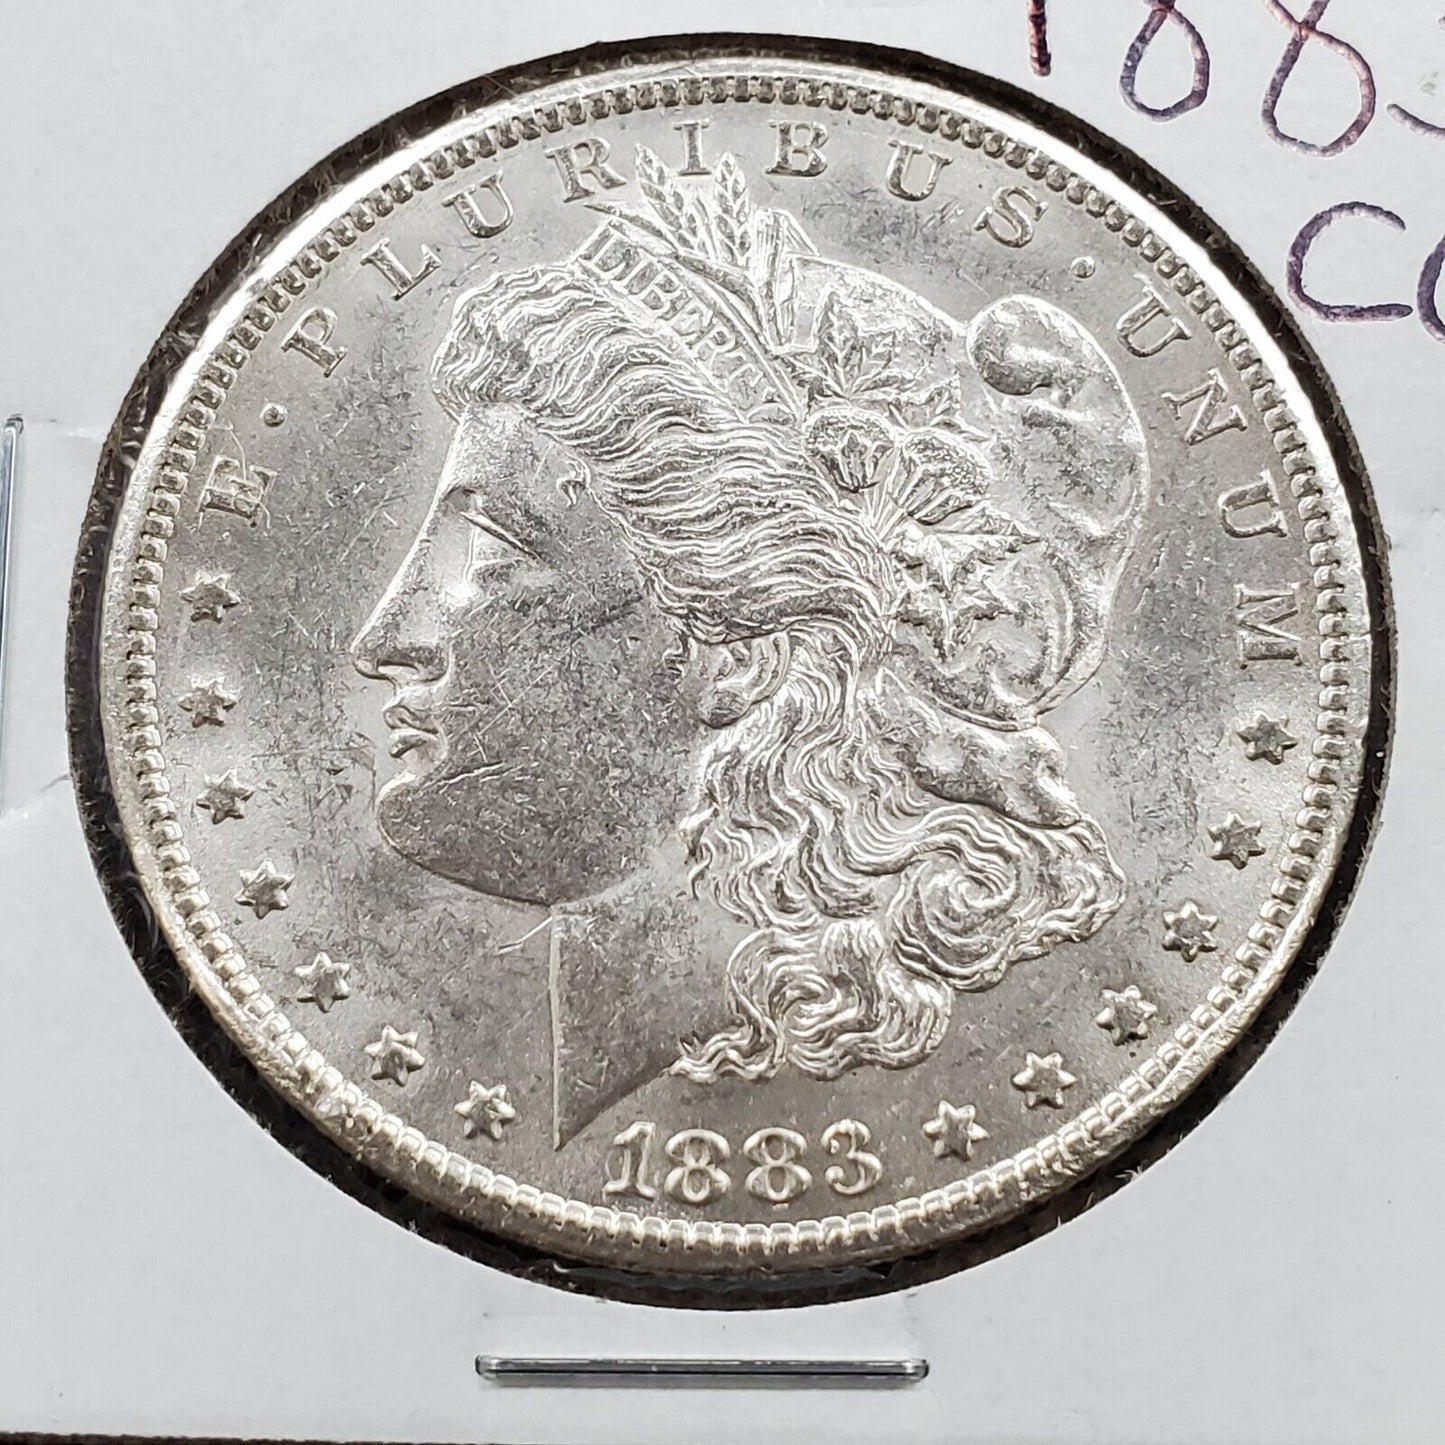 1883 CC Morgan Silver Eagle Dollar Coin Choice BU Uncirculated Carson City